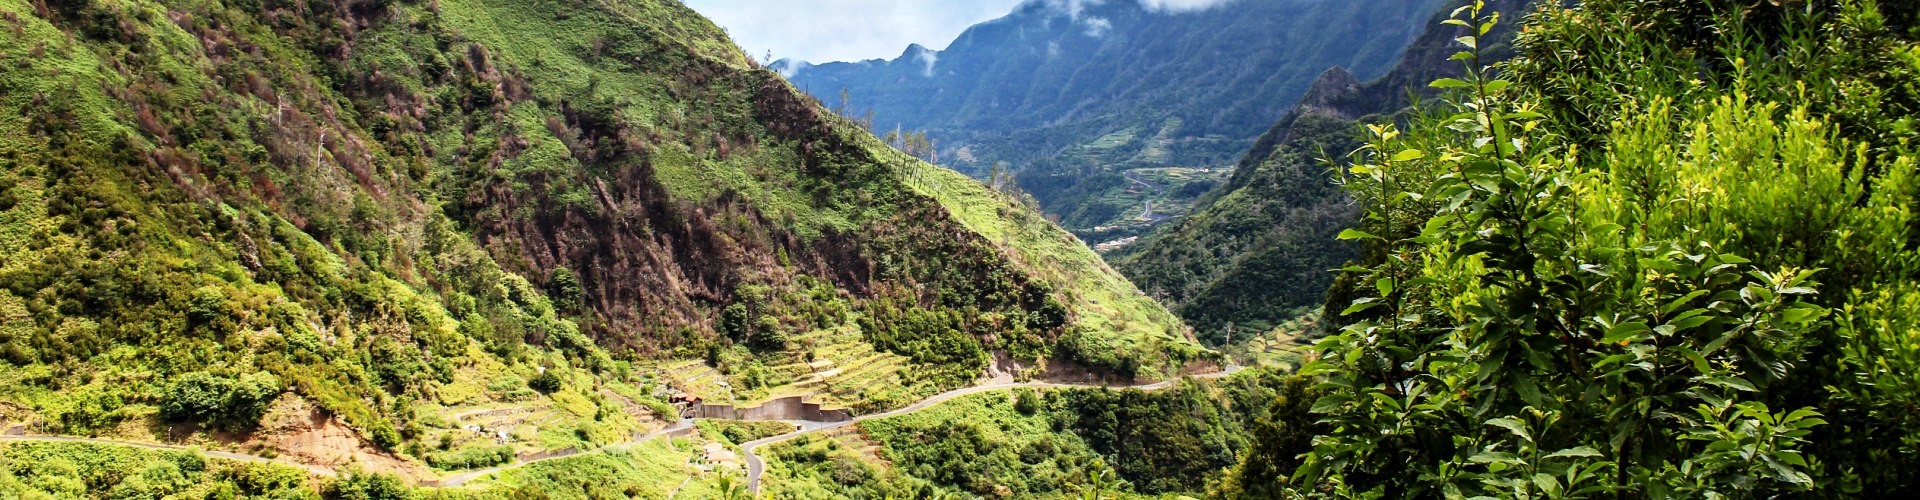 Urzal (hard) trail tour in Madeira Island